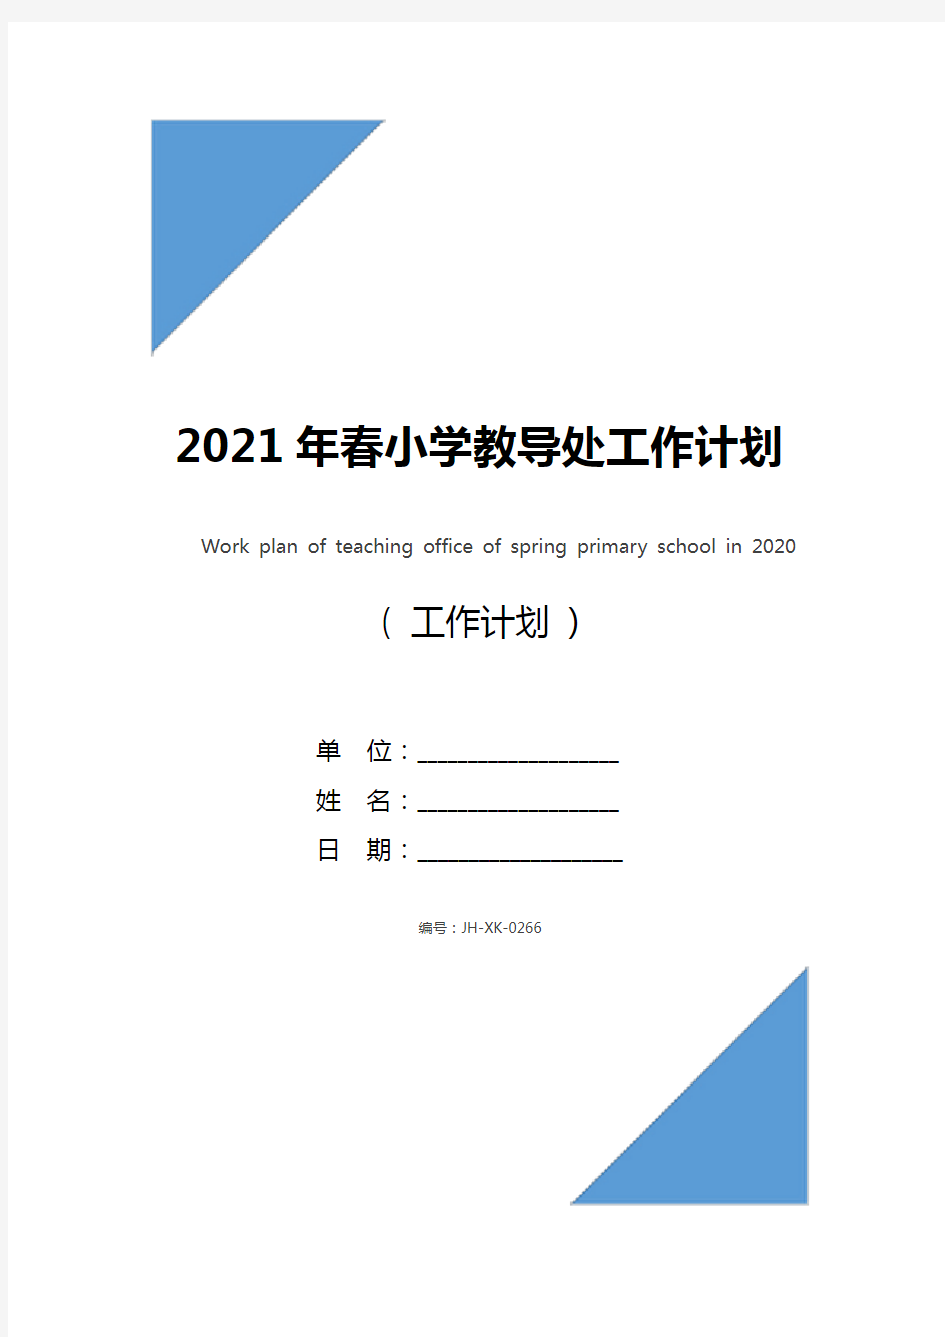 2021年春小学教导处工作计划(新编版)